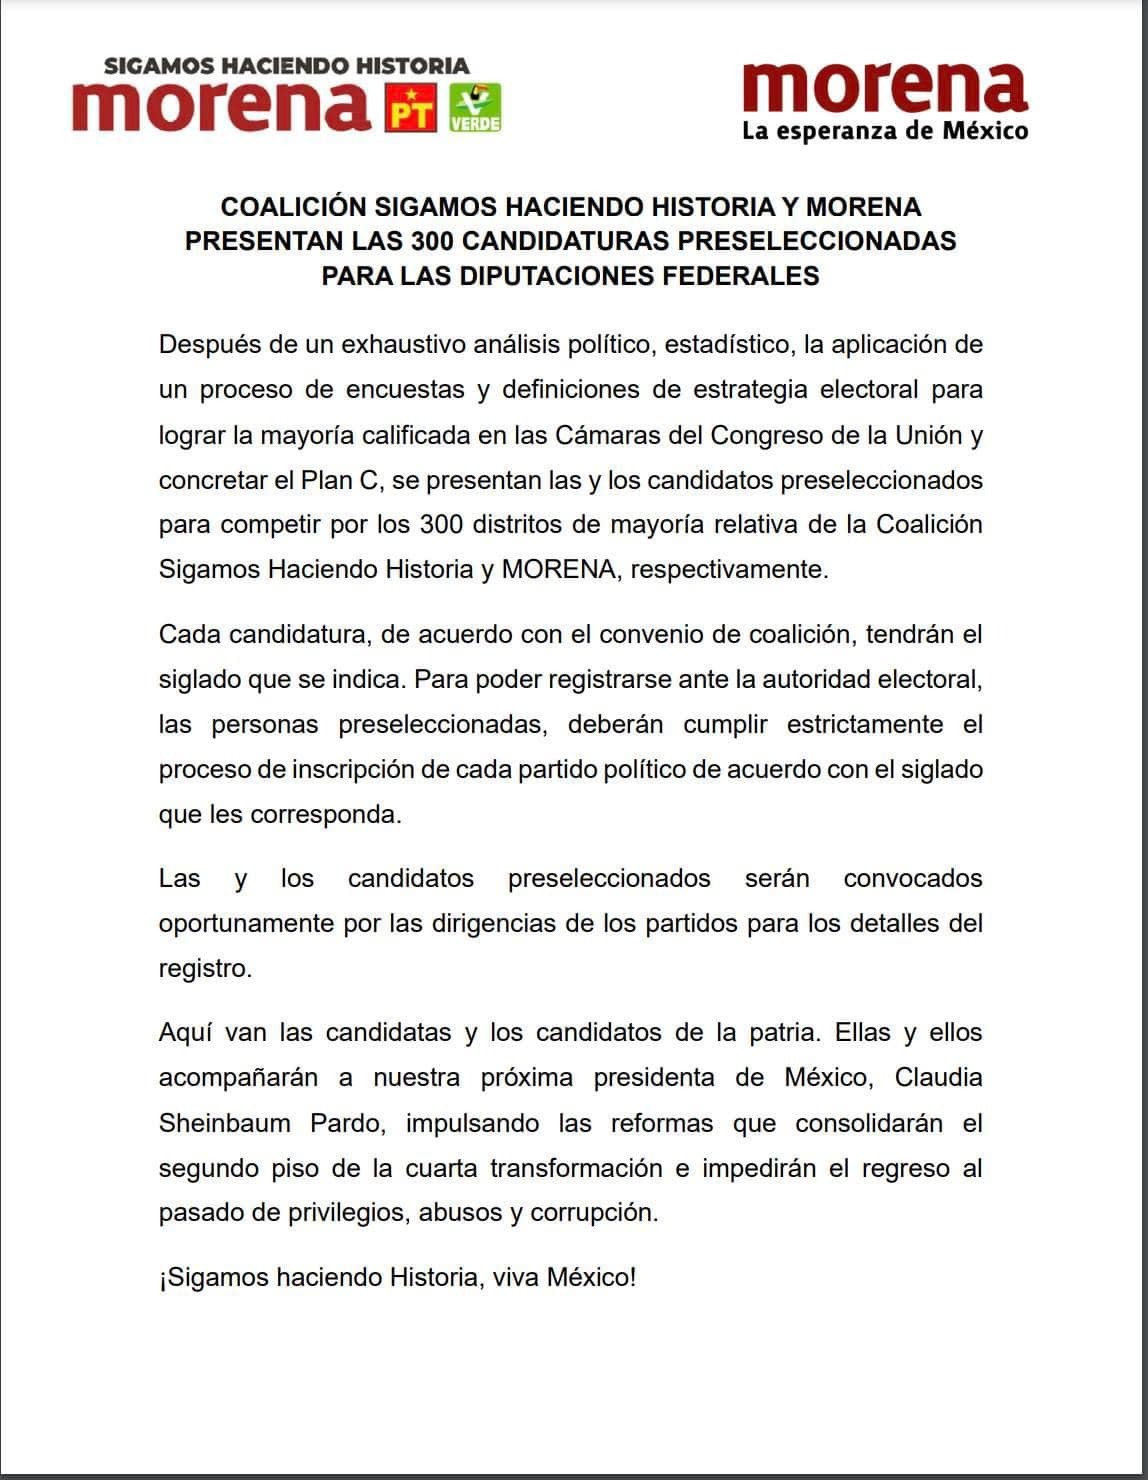 Morena publicó una lista con las 300 candidaturas preseleccionadas para contender por las diputaciones federales a nivel nacional